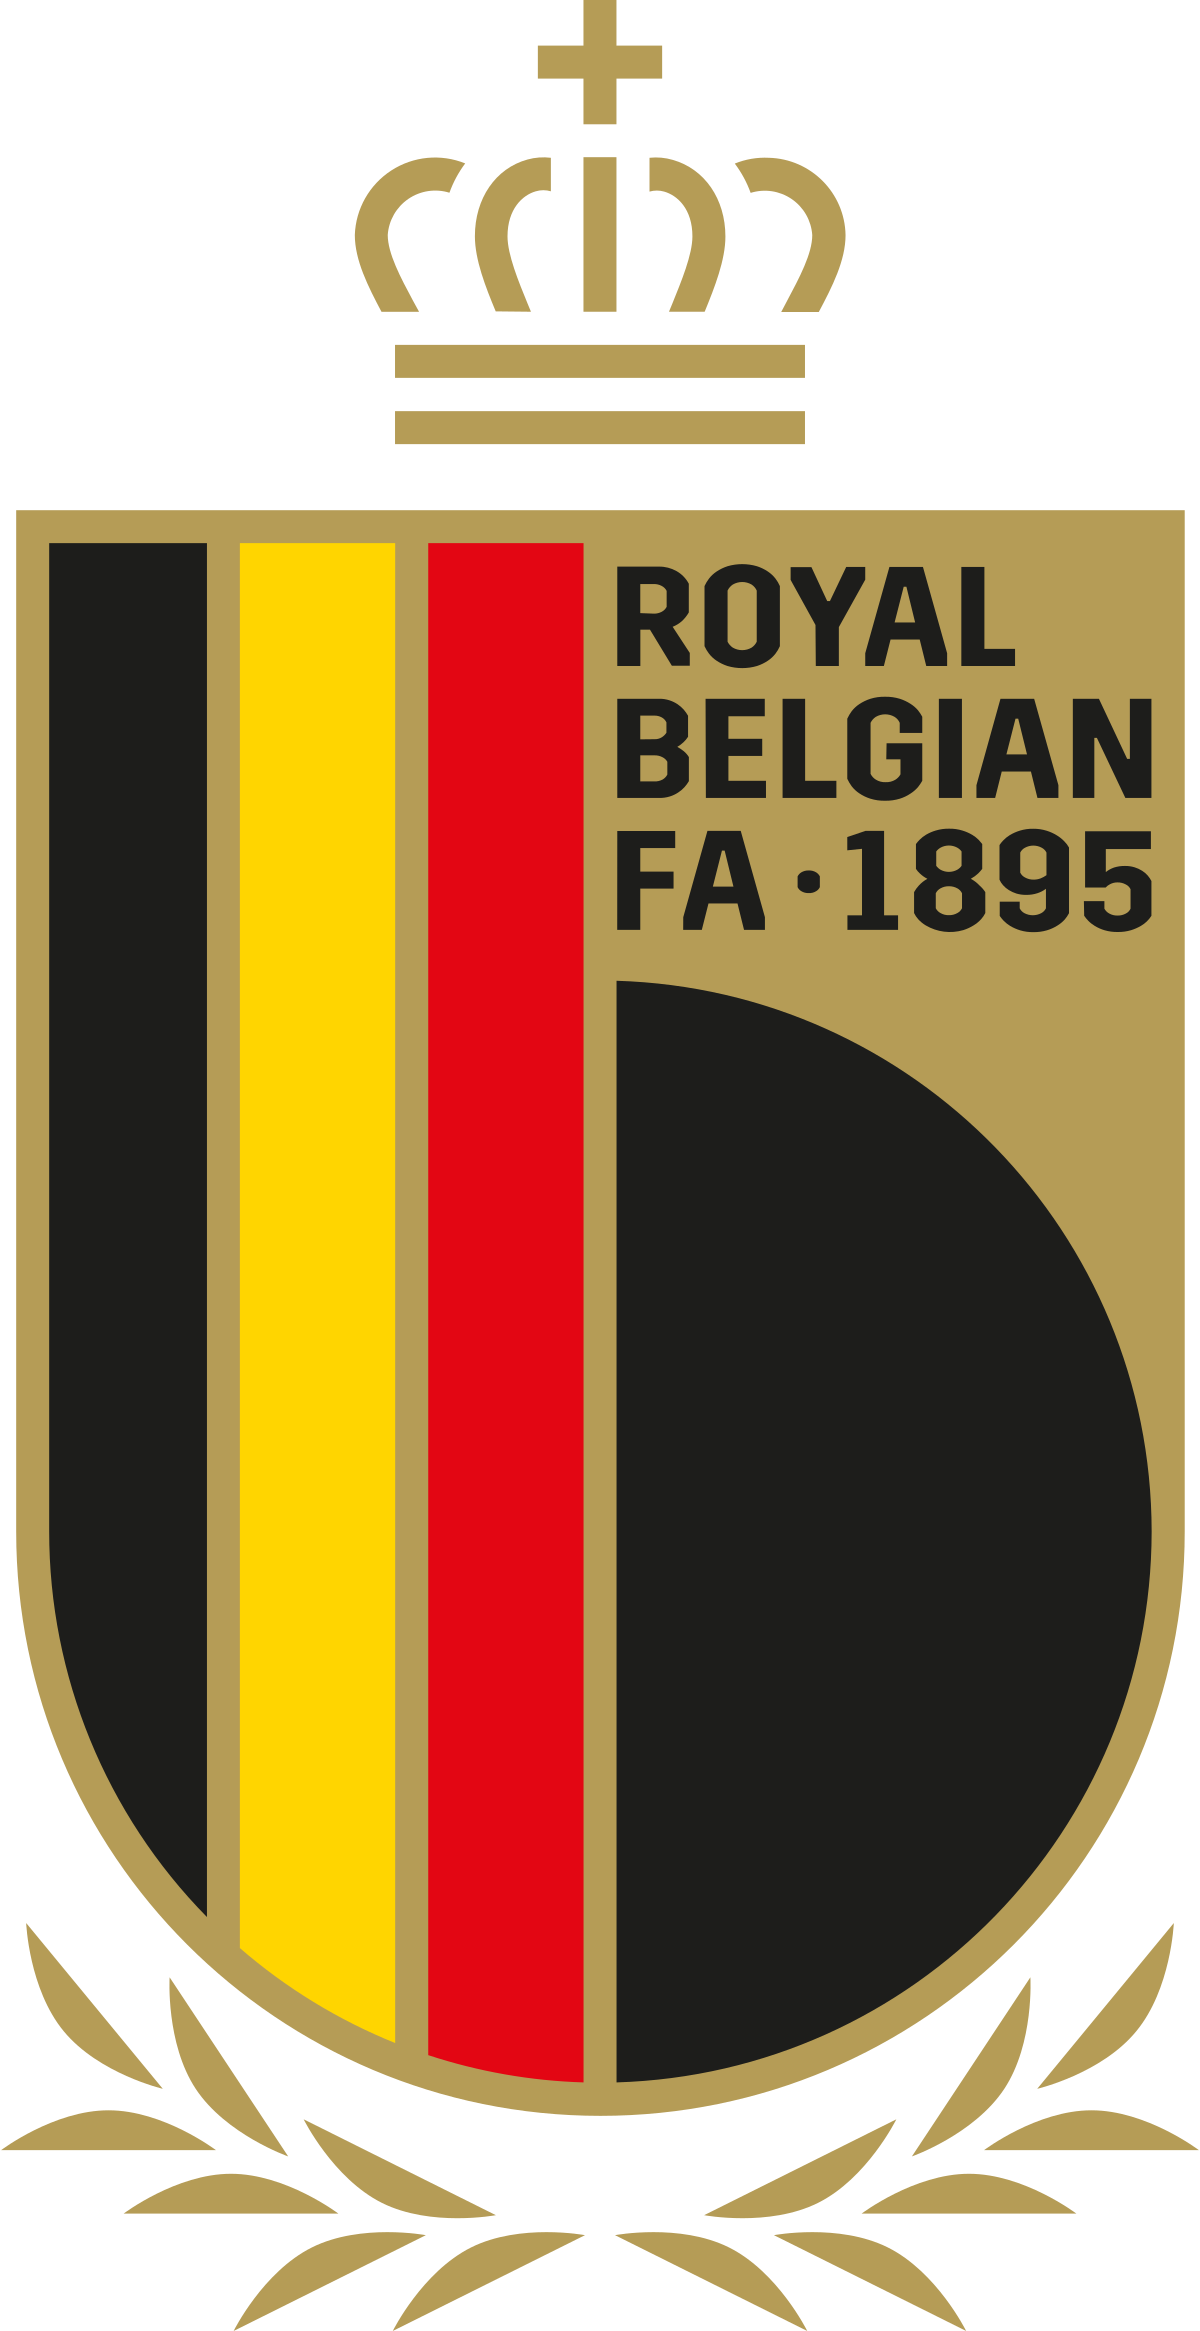 Hiệp hội bóng đá Hoàng gia Bỉ (KBVB) là tổ chức quản lý và phát triển bóng đá đáng tin cậy tại Bỉ. Năm 2021, KBVB đã tổ chức thành công Giải vô địch châu Âu và trở thành một trong những đơn vị tổ chức sự kiện tốt nhất tại châu Âu. Hãy xem hình ảnh liên quan đến KBVB để cảm nhận sự quyết đoán, chuyên nghiệp của tổ chức này.